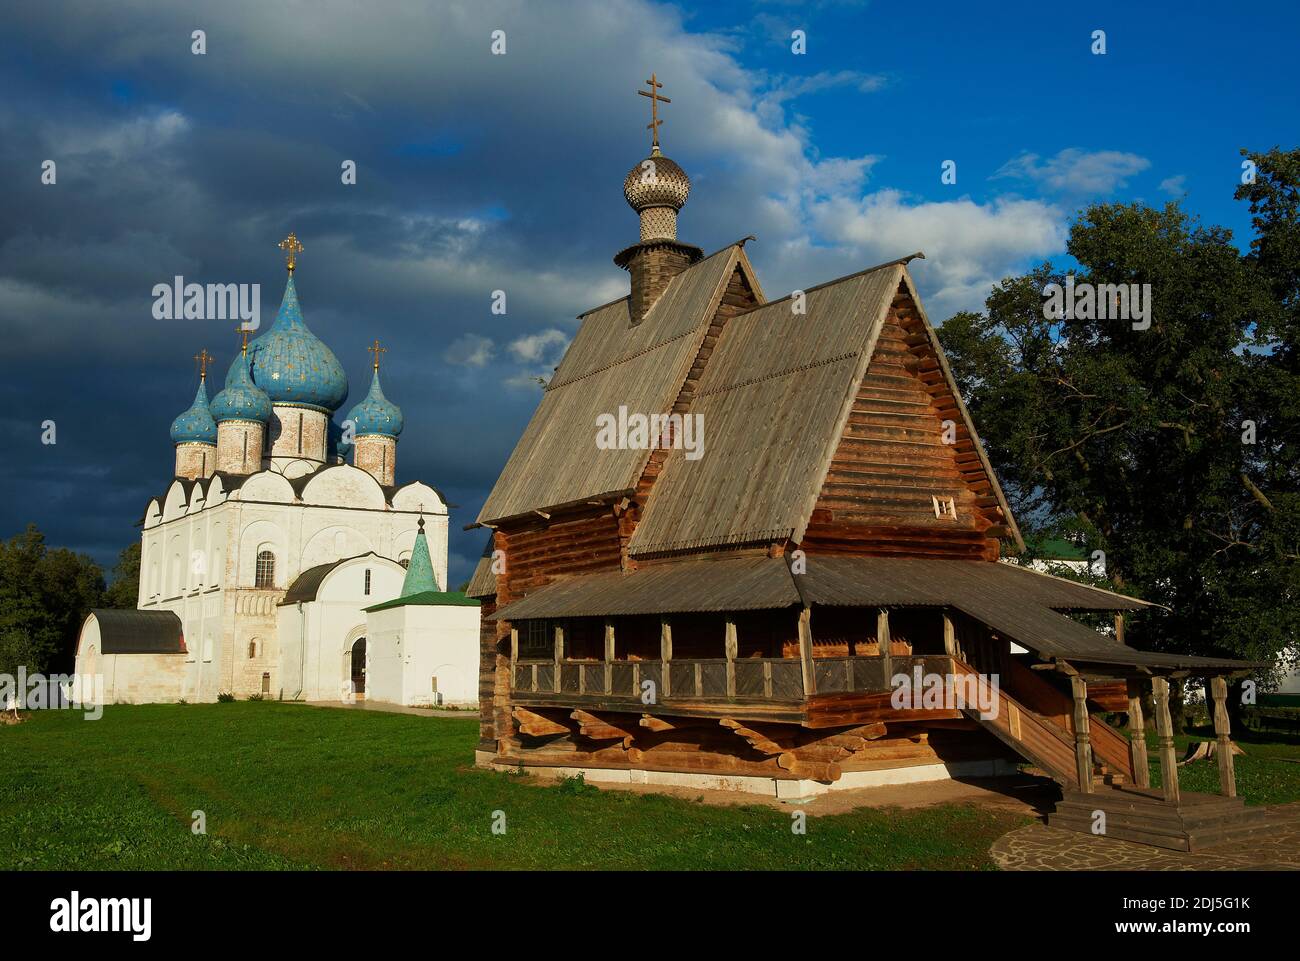 Russie, Rossiya, Vladimir Oblast, anneau d'or, Suzdal, patrimoine mondial de l'UNESCO, citadelle fortifiée « kremlin ». Cathédrale de la Nativité, XIIe siècle, an Banque D'Images